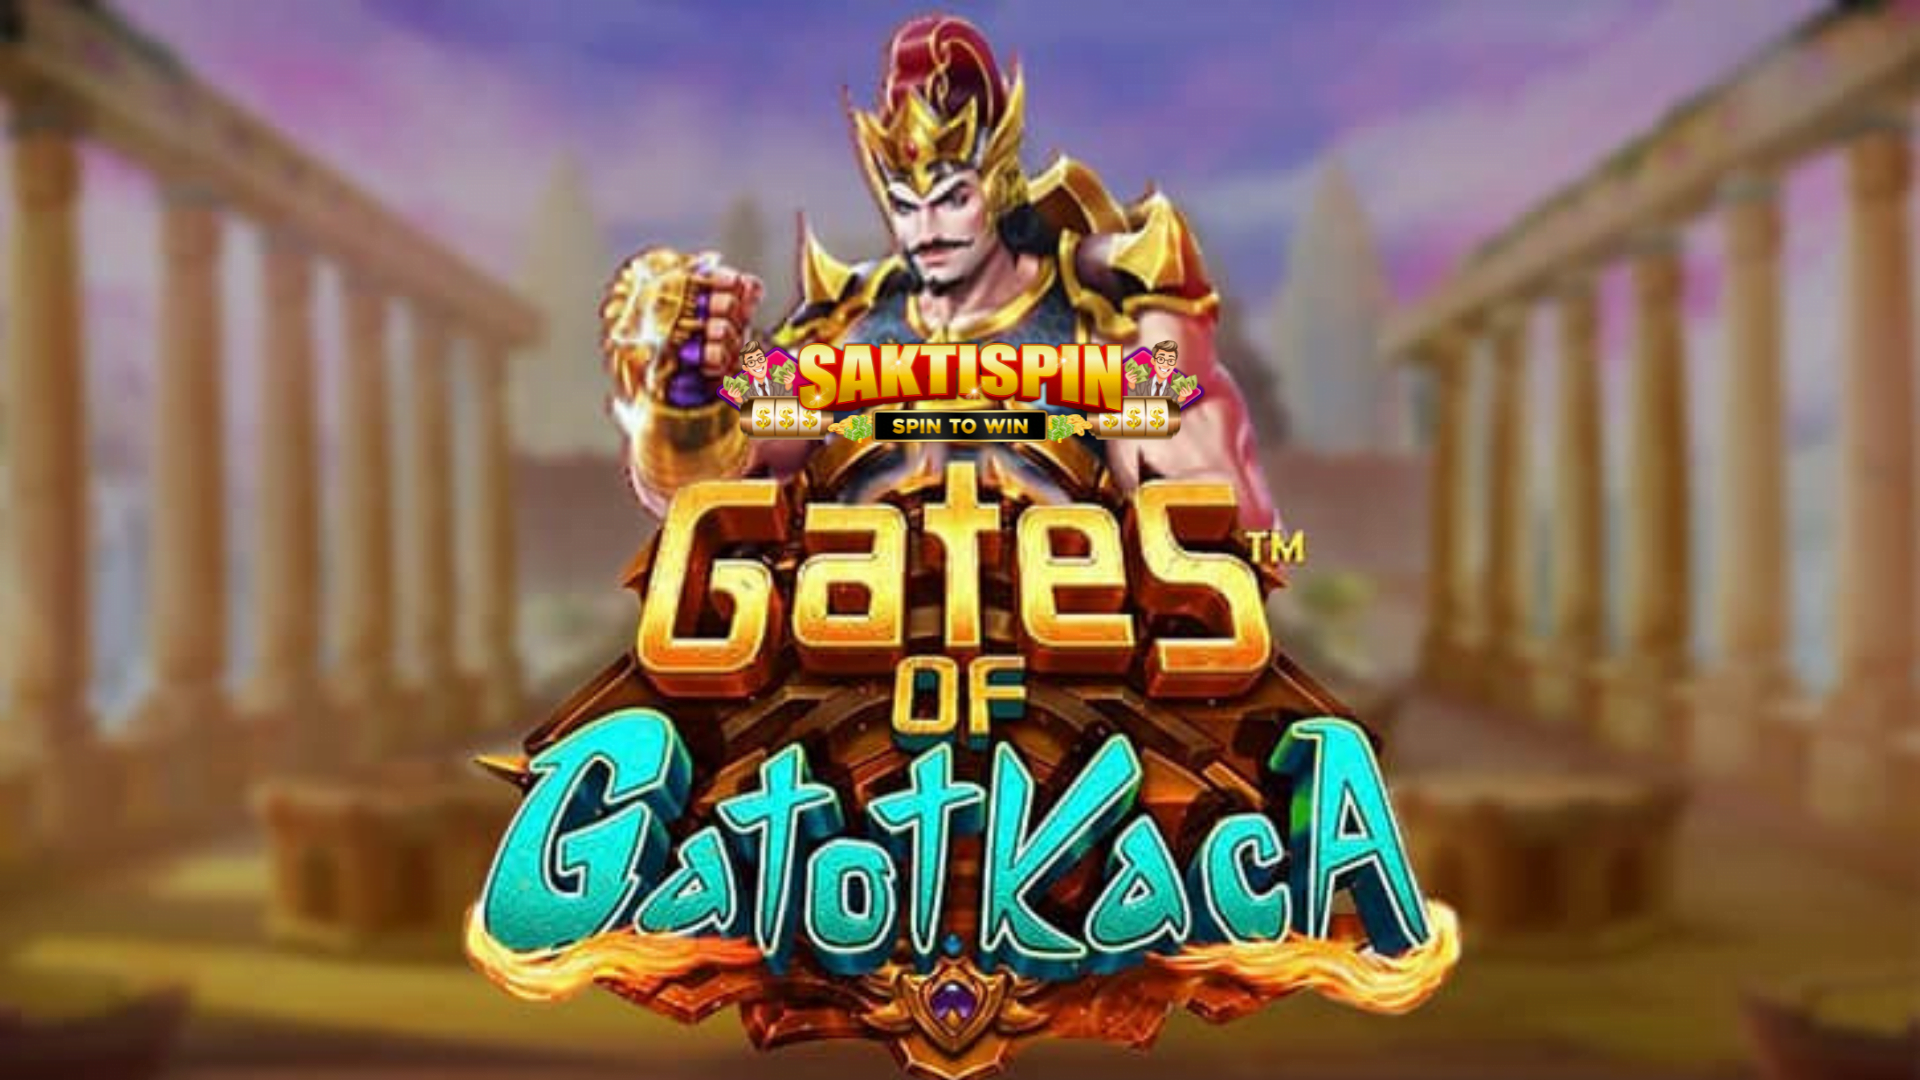 Banner Gates of Gatot Kaca Saktispin